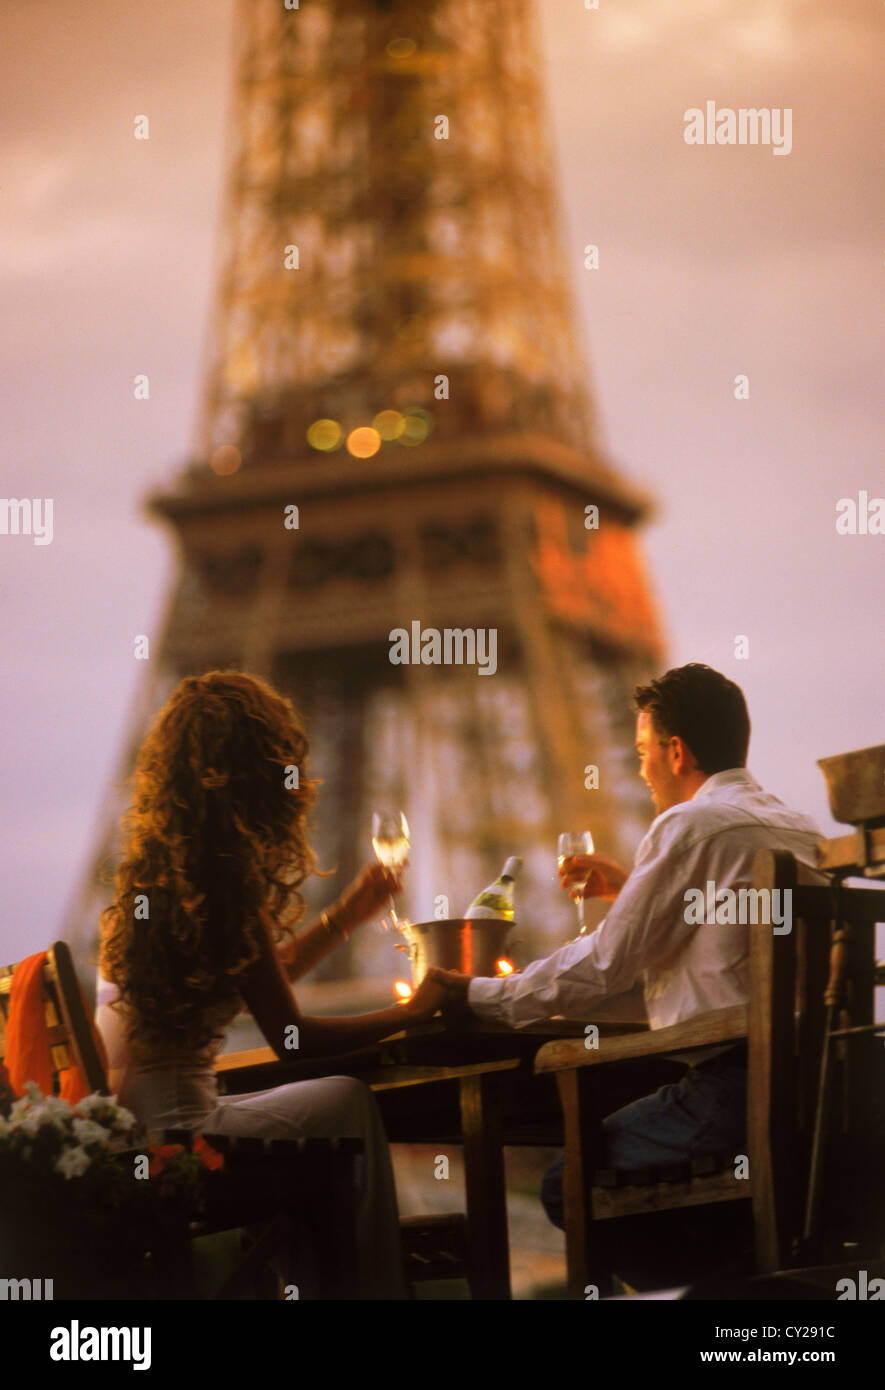 Paar am Seineufer Hausboot Champagner trinken, romantischen Sonnenuntergang unter Eiffelturm Stockfoto